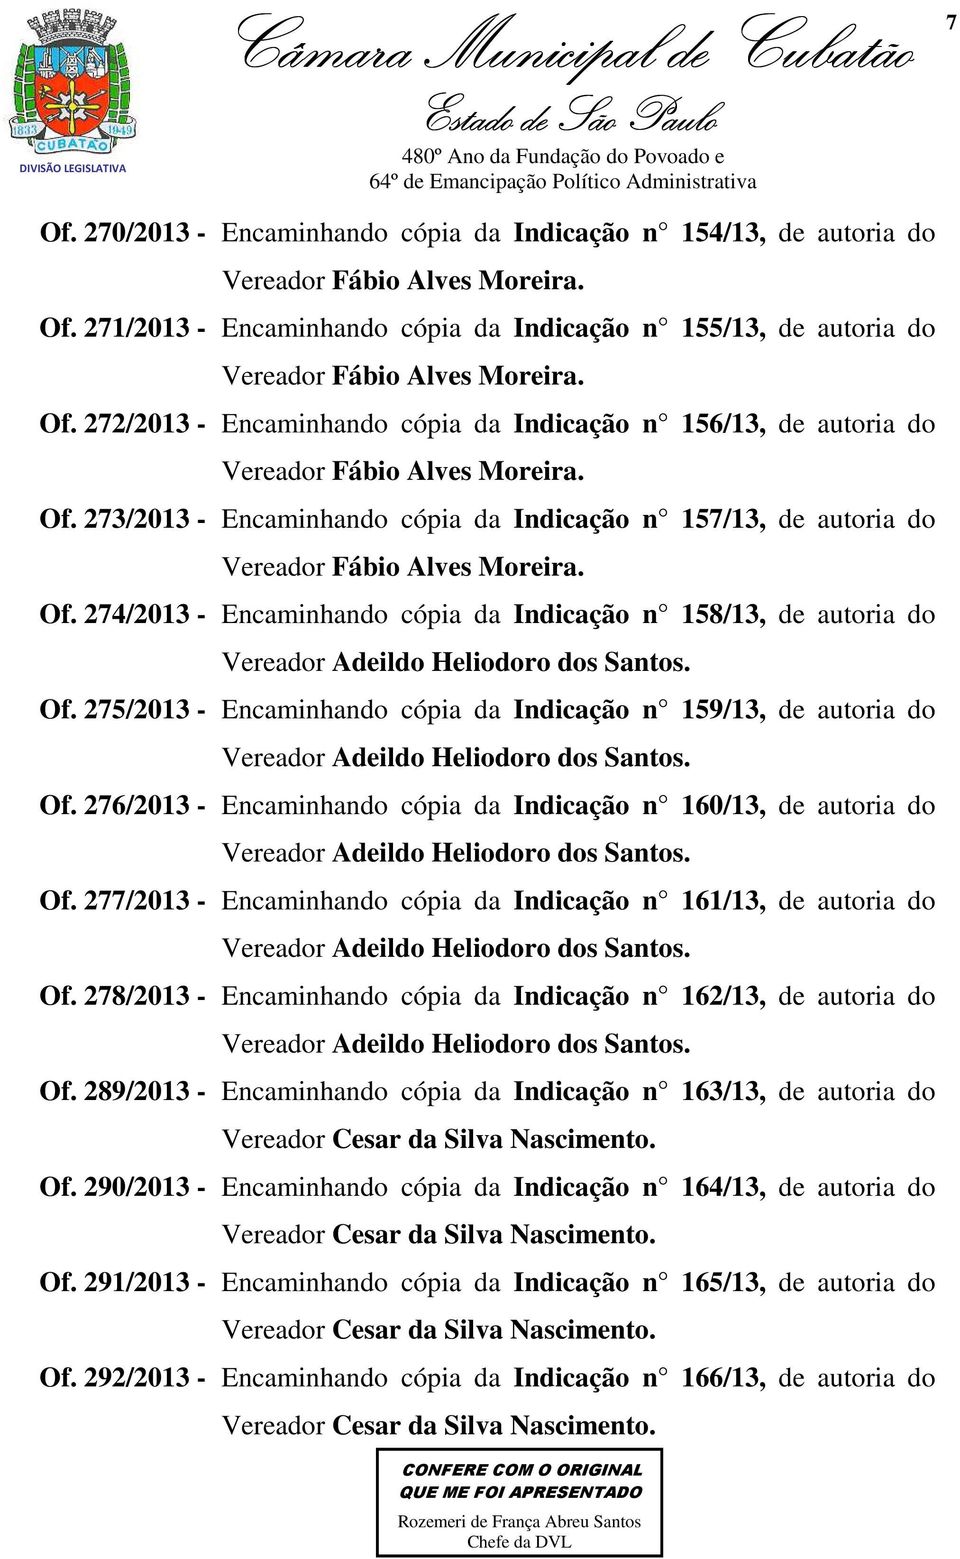 273/2013 - Encaminhando cópia da Indicação n 157/13, de autoria do Vereador Fábio Alves Moreira. Of.